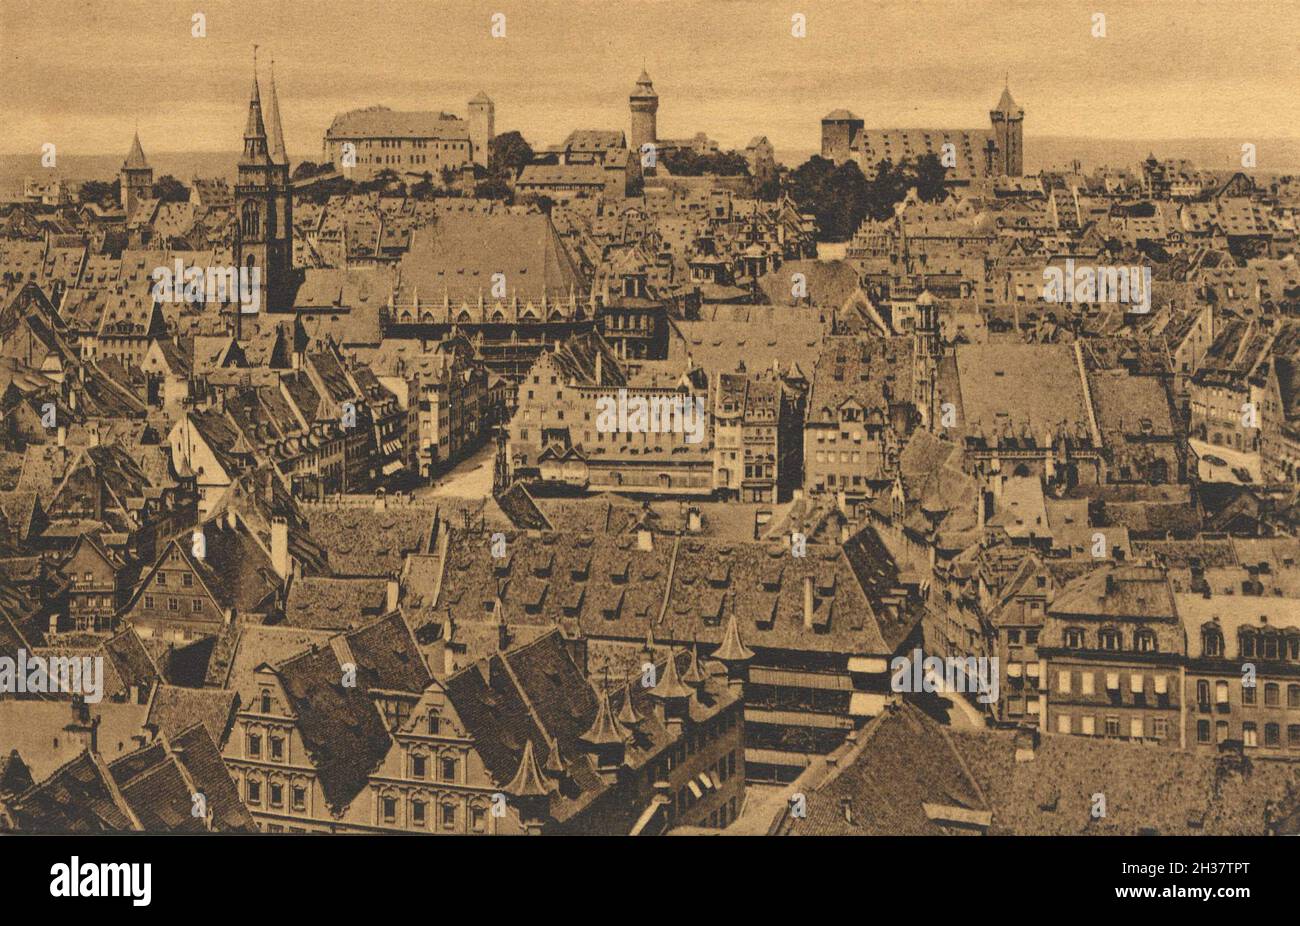 Nürnberg, Mittelfranken, Bayern, Deutschland, Ansicht von ca 1910, digitale Reproduktion einer gemeinfreien Postkarte Banque D'Images